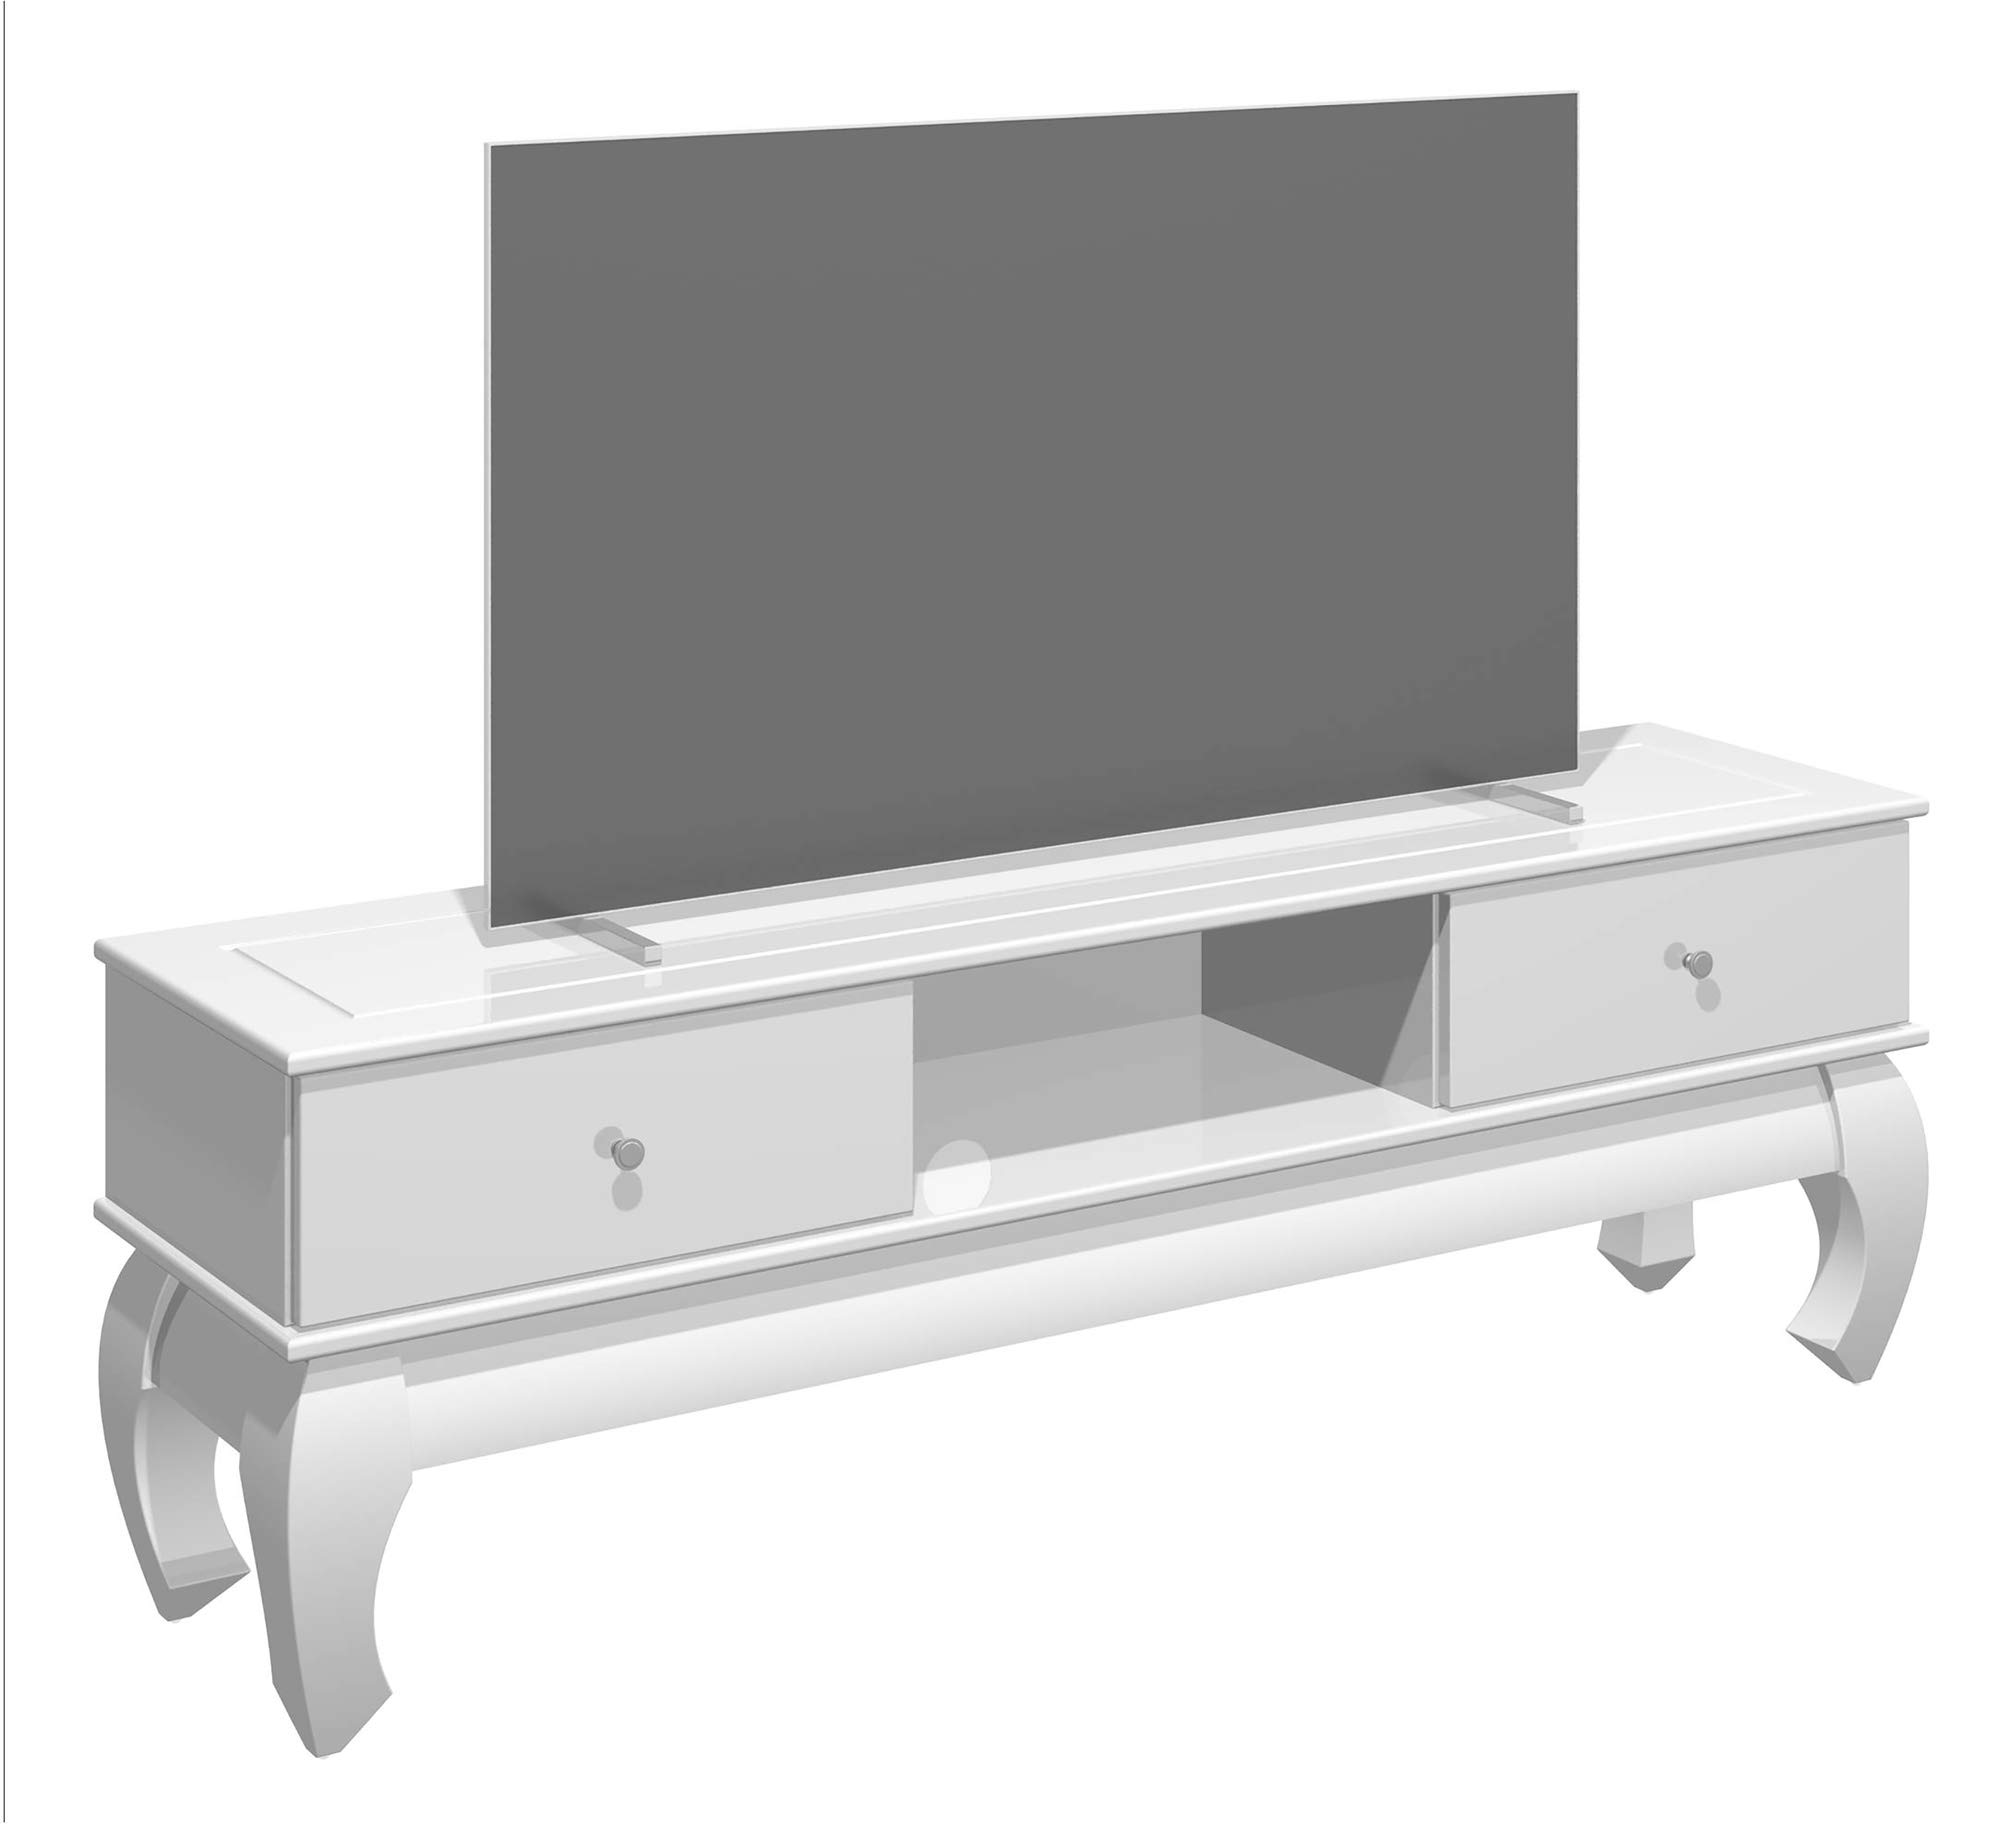 HOMEXPERTS TV-Stand OPIUM / modernes Lowboard in Hochglanz Weiß / Ferhseh-Regal / Metall Griffe Edelstahl-Chrom-Optik / Wohnzimmer-Schrank / TV-Bank / 159 x 54 x 40 cm (BxHxT)